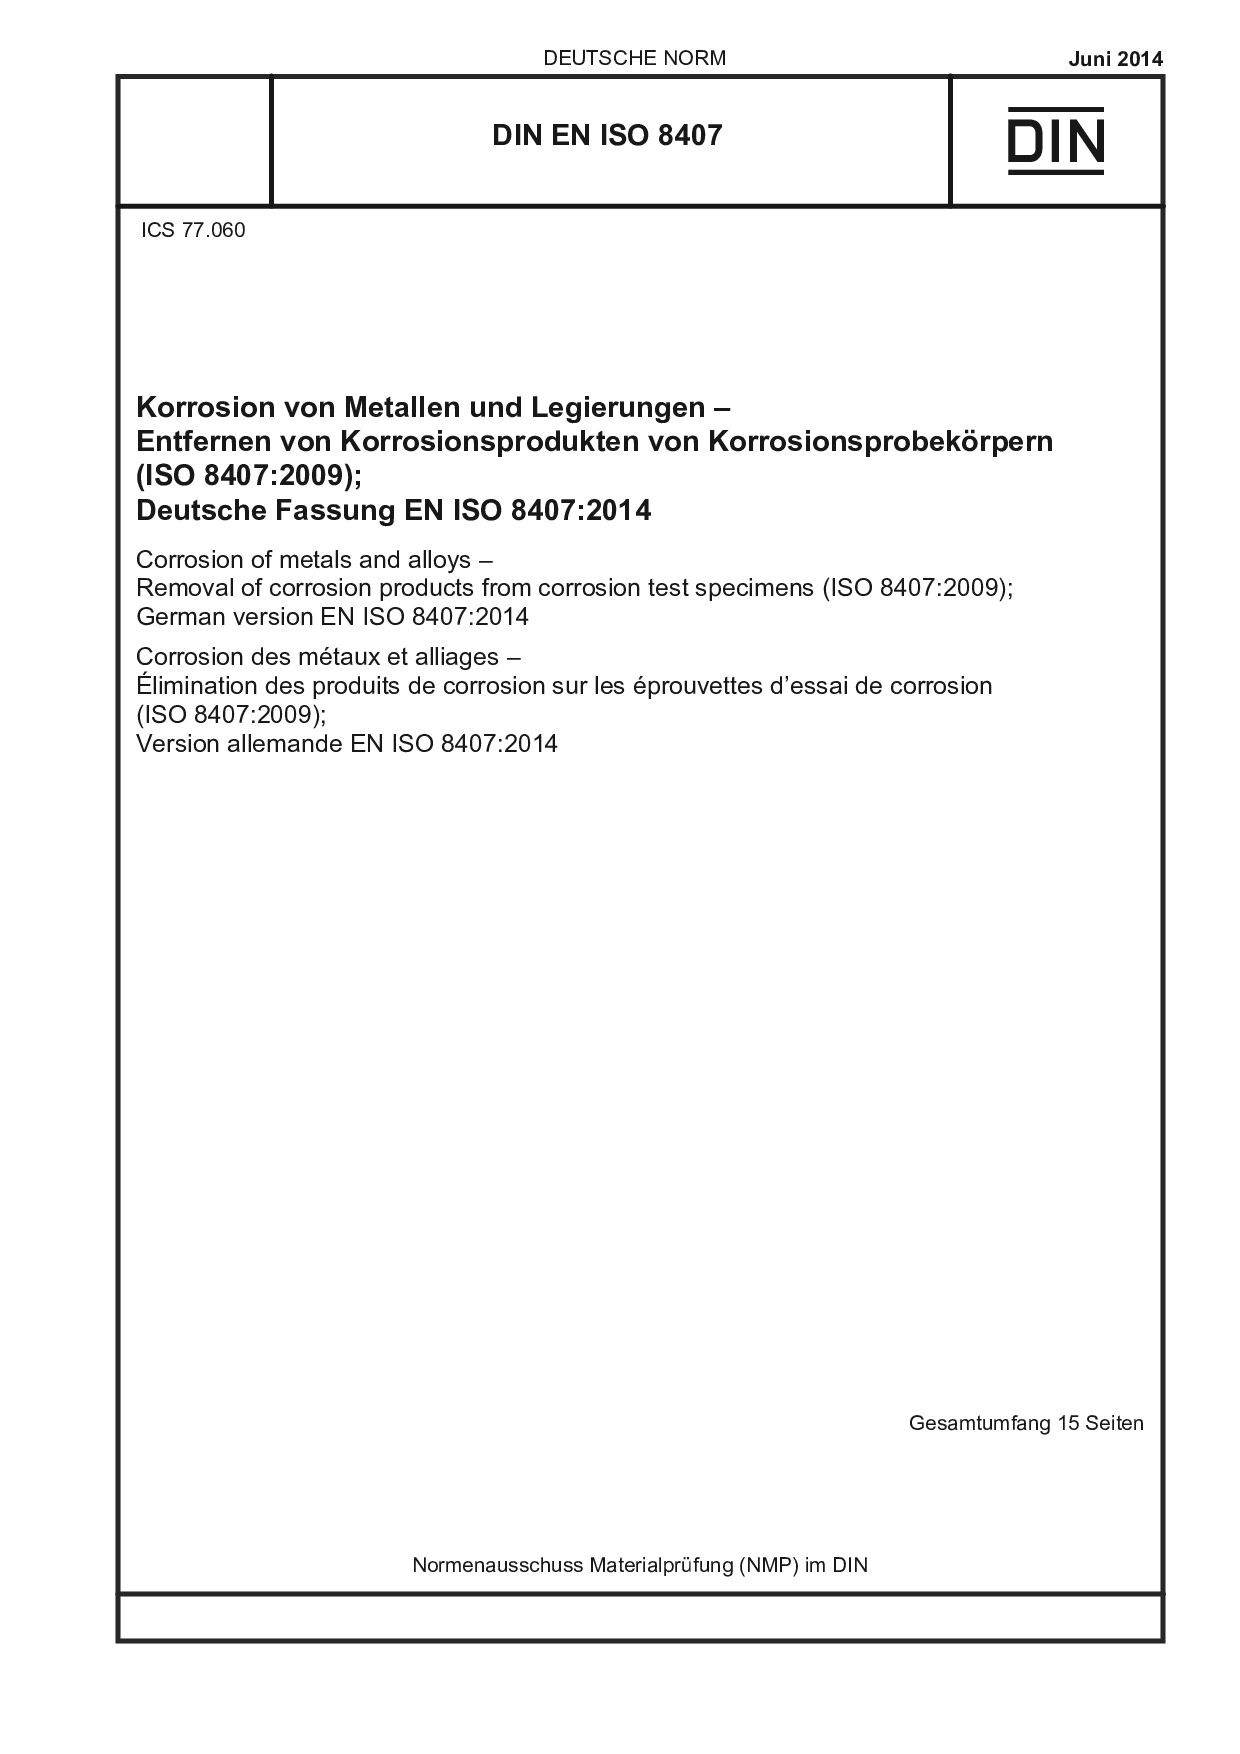 DIN EN ISO 8407:2014封面图